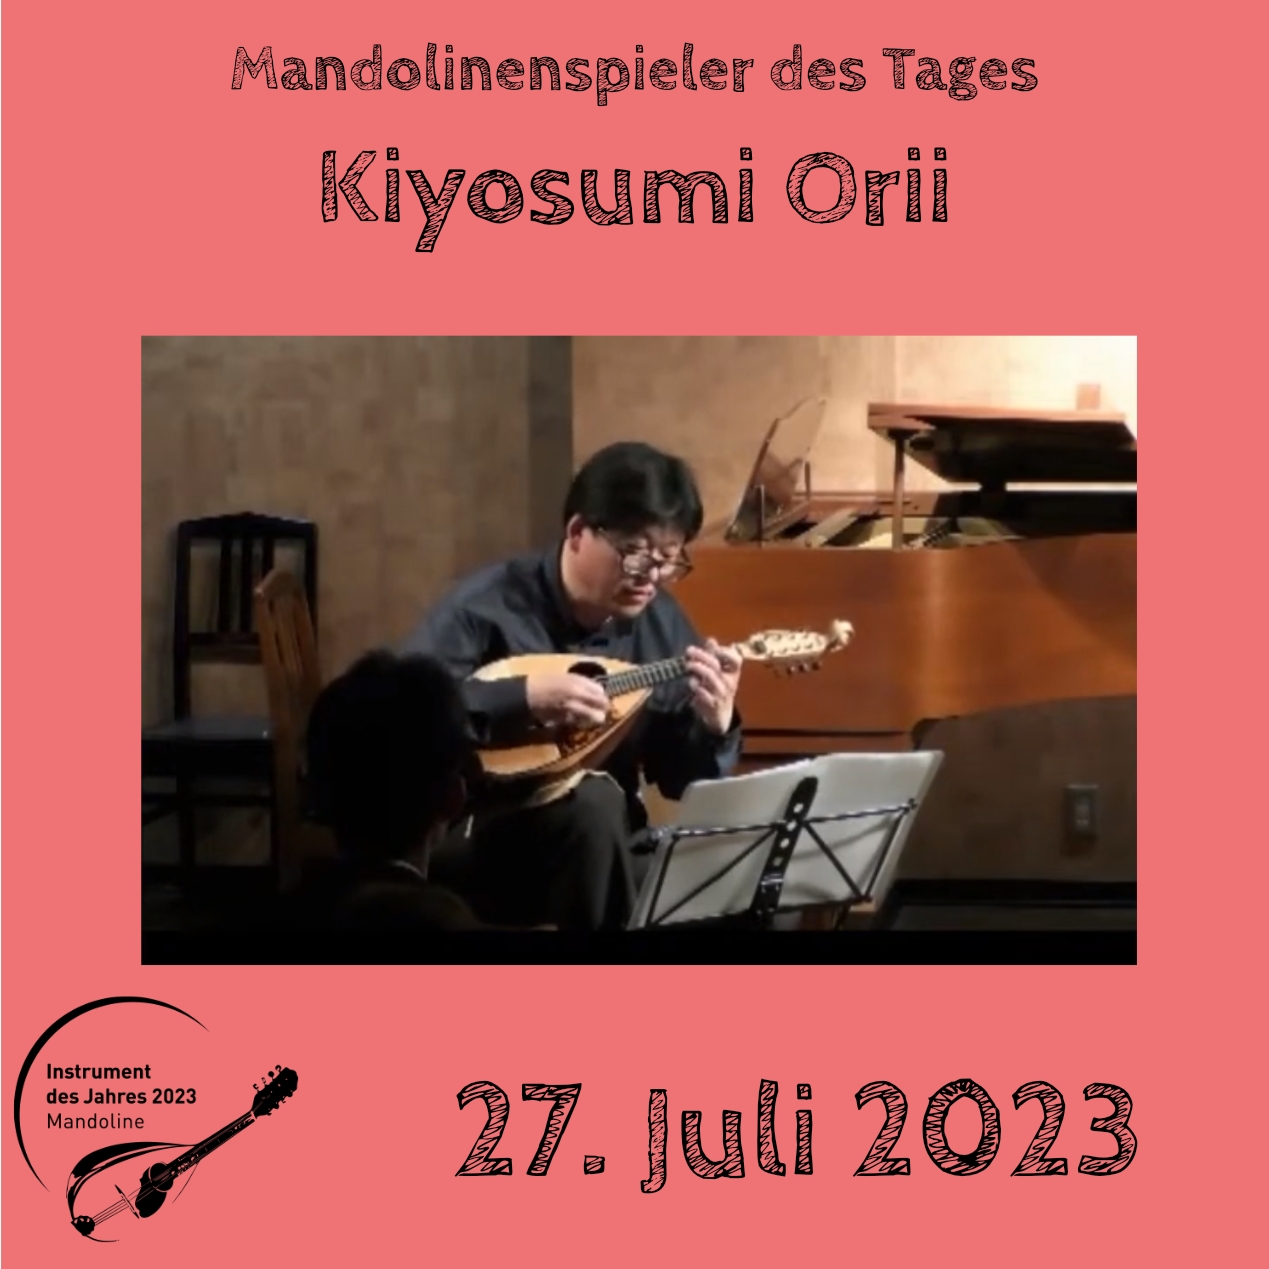 27. Juli - Kiyosumi Orii Mandoline Instrument des Jahres 2023 Mandolinenspieler Mandolinenspielerin des Tages